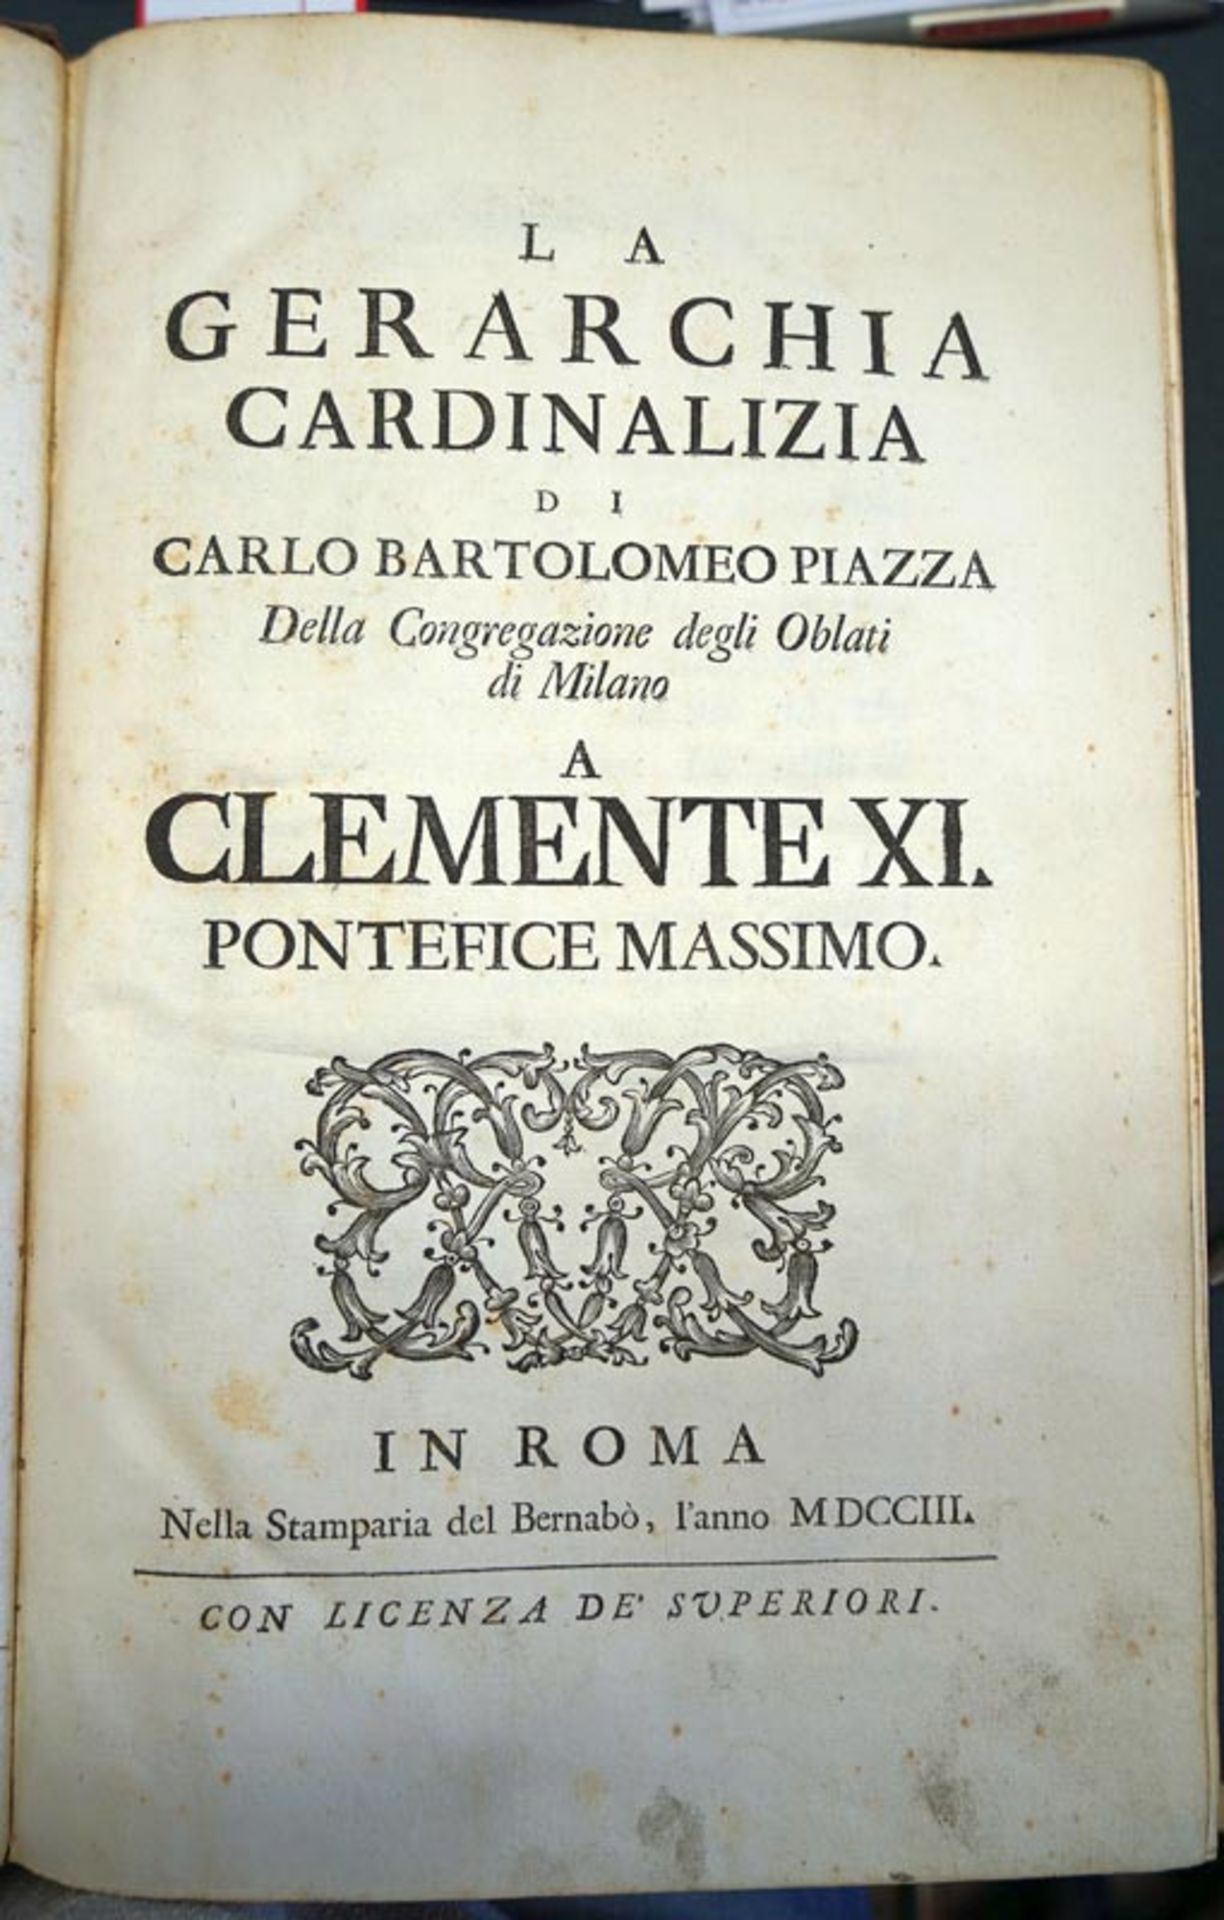 Piazza, Carlo Bartolomeo: La gerarchia cardinalizia